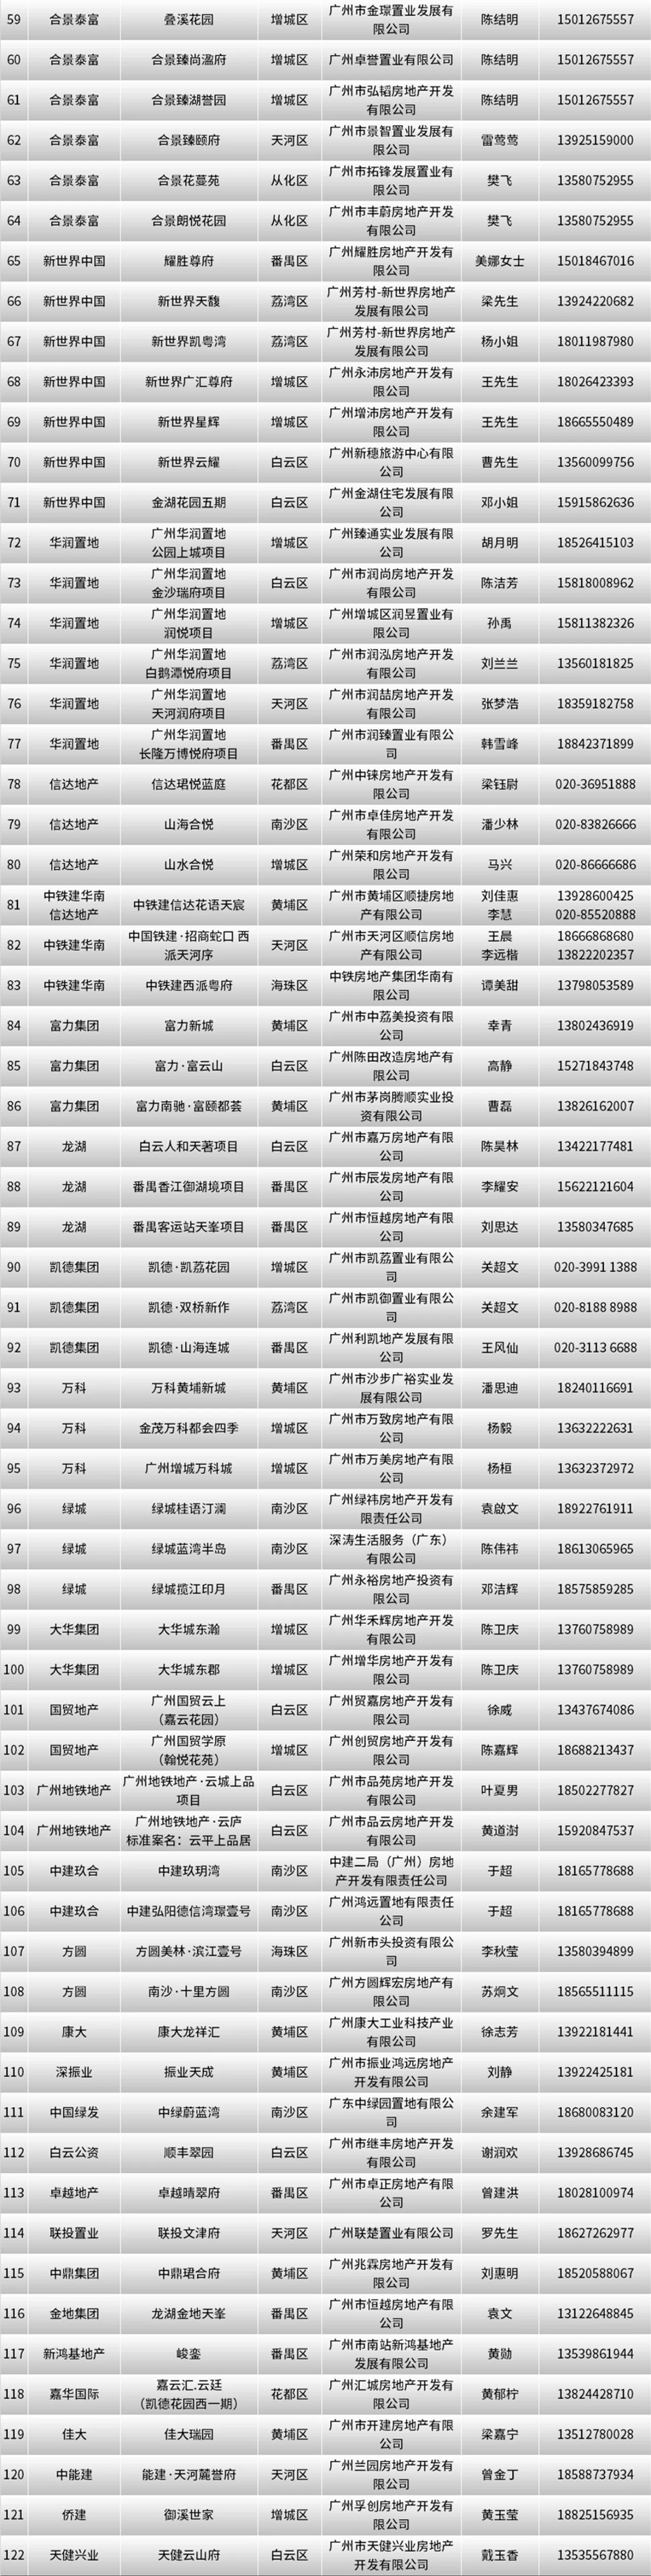 广州首批122个楼盘将介入“以旧换新”，勾当时间为期半年